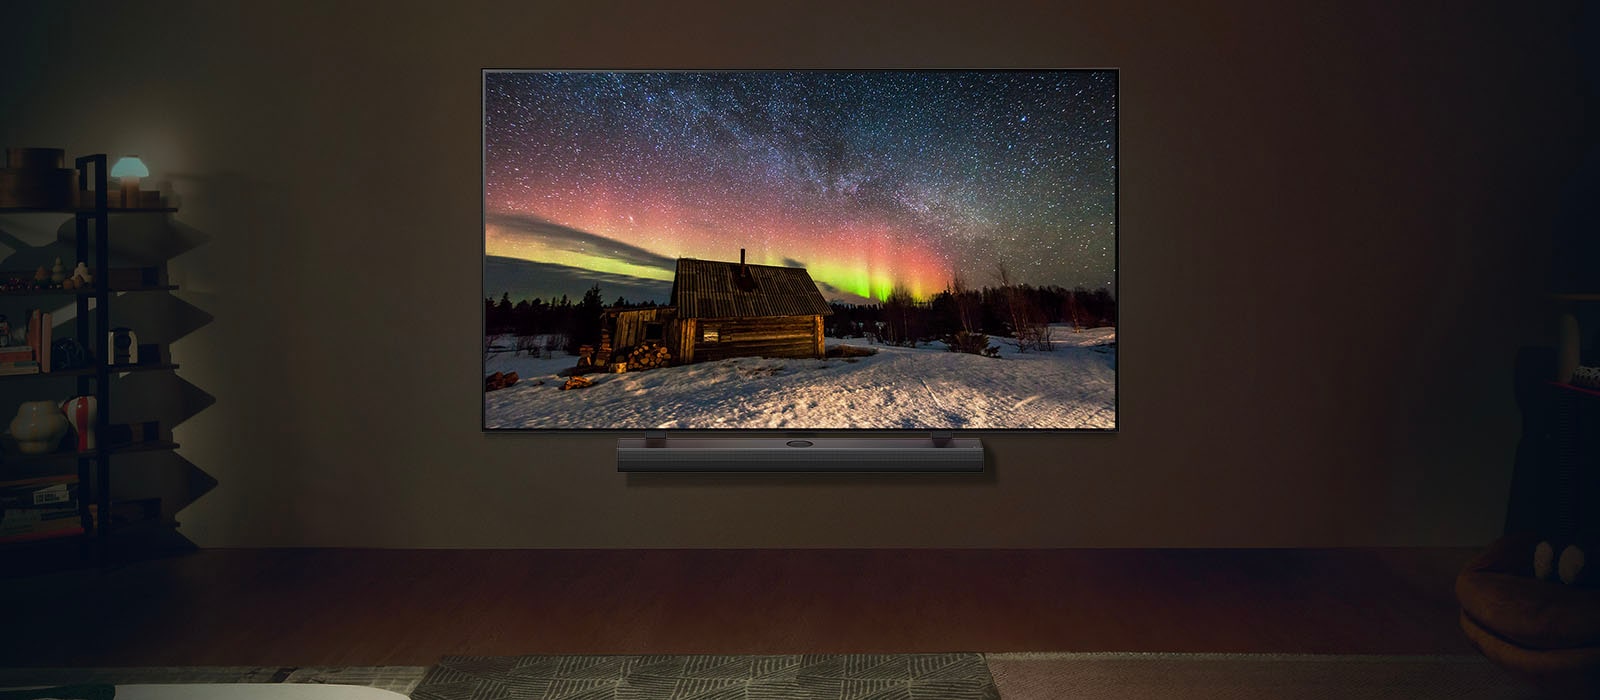 LG TV i LG soundbar u savremenom životnom prostoru tokom noći. Na ekranu je prikazana slika polarne svetlosti na idealnom nivou osvetljenosti.